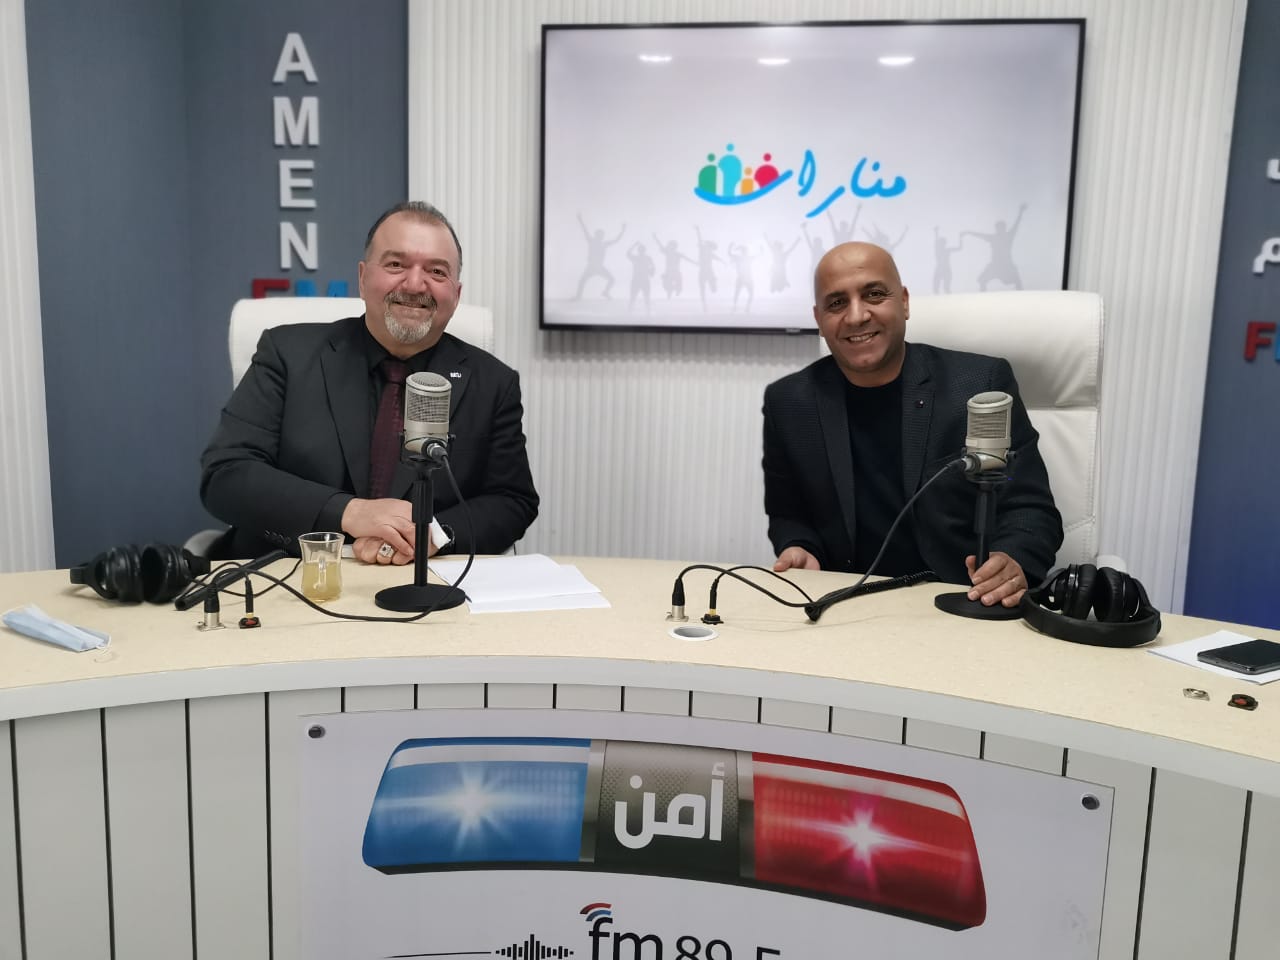 جامعة الشرق الأوسط تشارك في برنامج منارات عبر إذاعة أمن FM